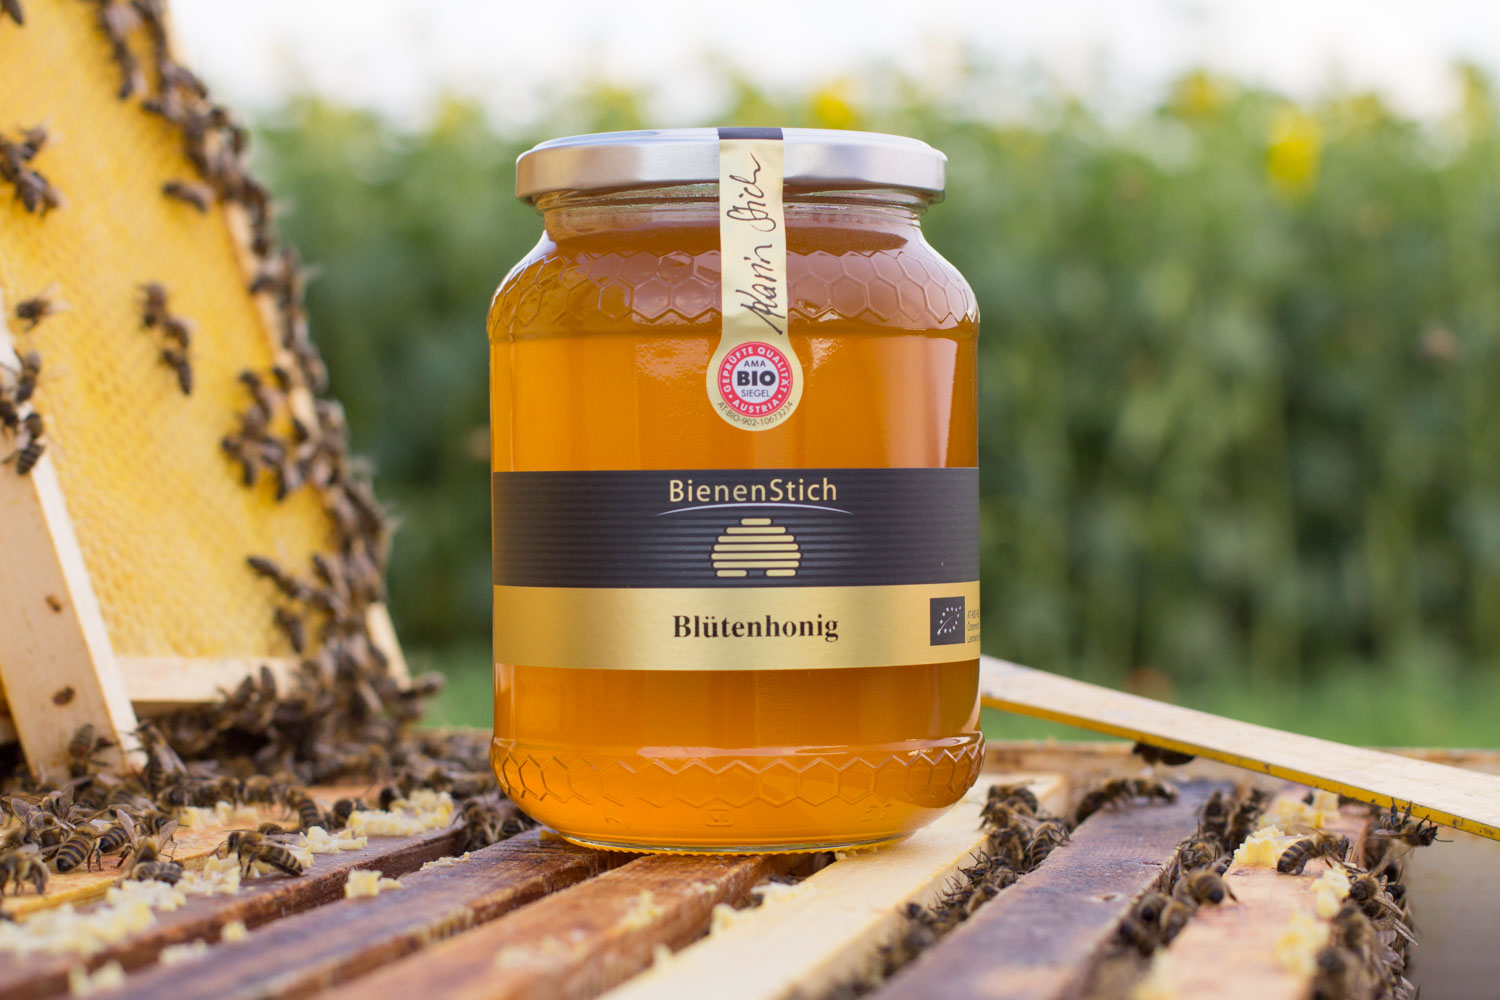 Blütenhonig-1kg-Bienenstich-Honig-biologisch-bio-Waldhonig-Blütenhonig-Österreich-Wien-Manhartsbrunn-Familie-Stich-Imker-Imkerei-Produktfoto-Biene-1